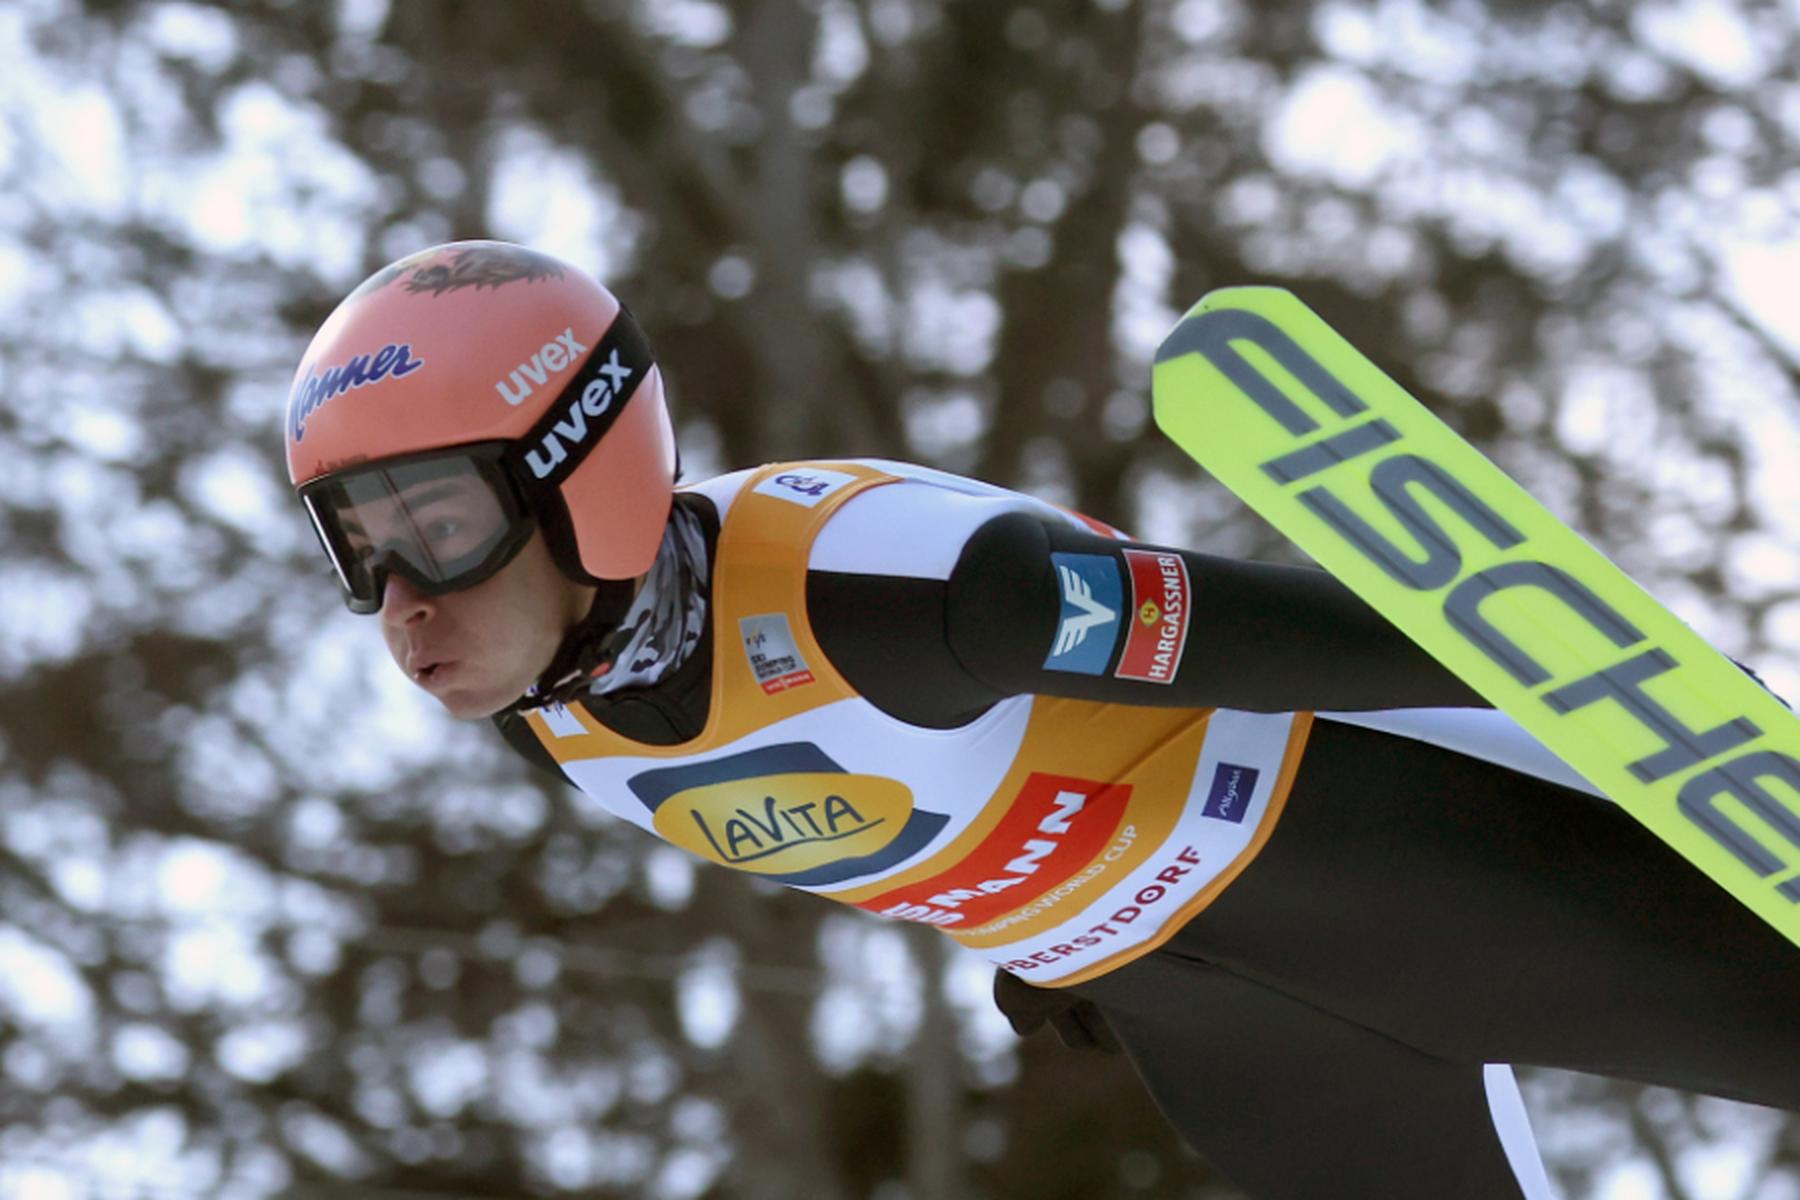 Lahti: Skispringer Hörl in Lahti Fünfter - Kraft nur auf Platz 49